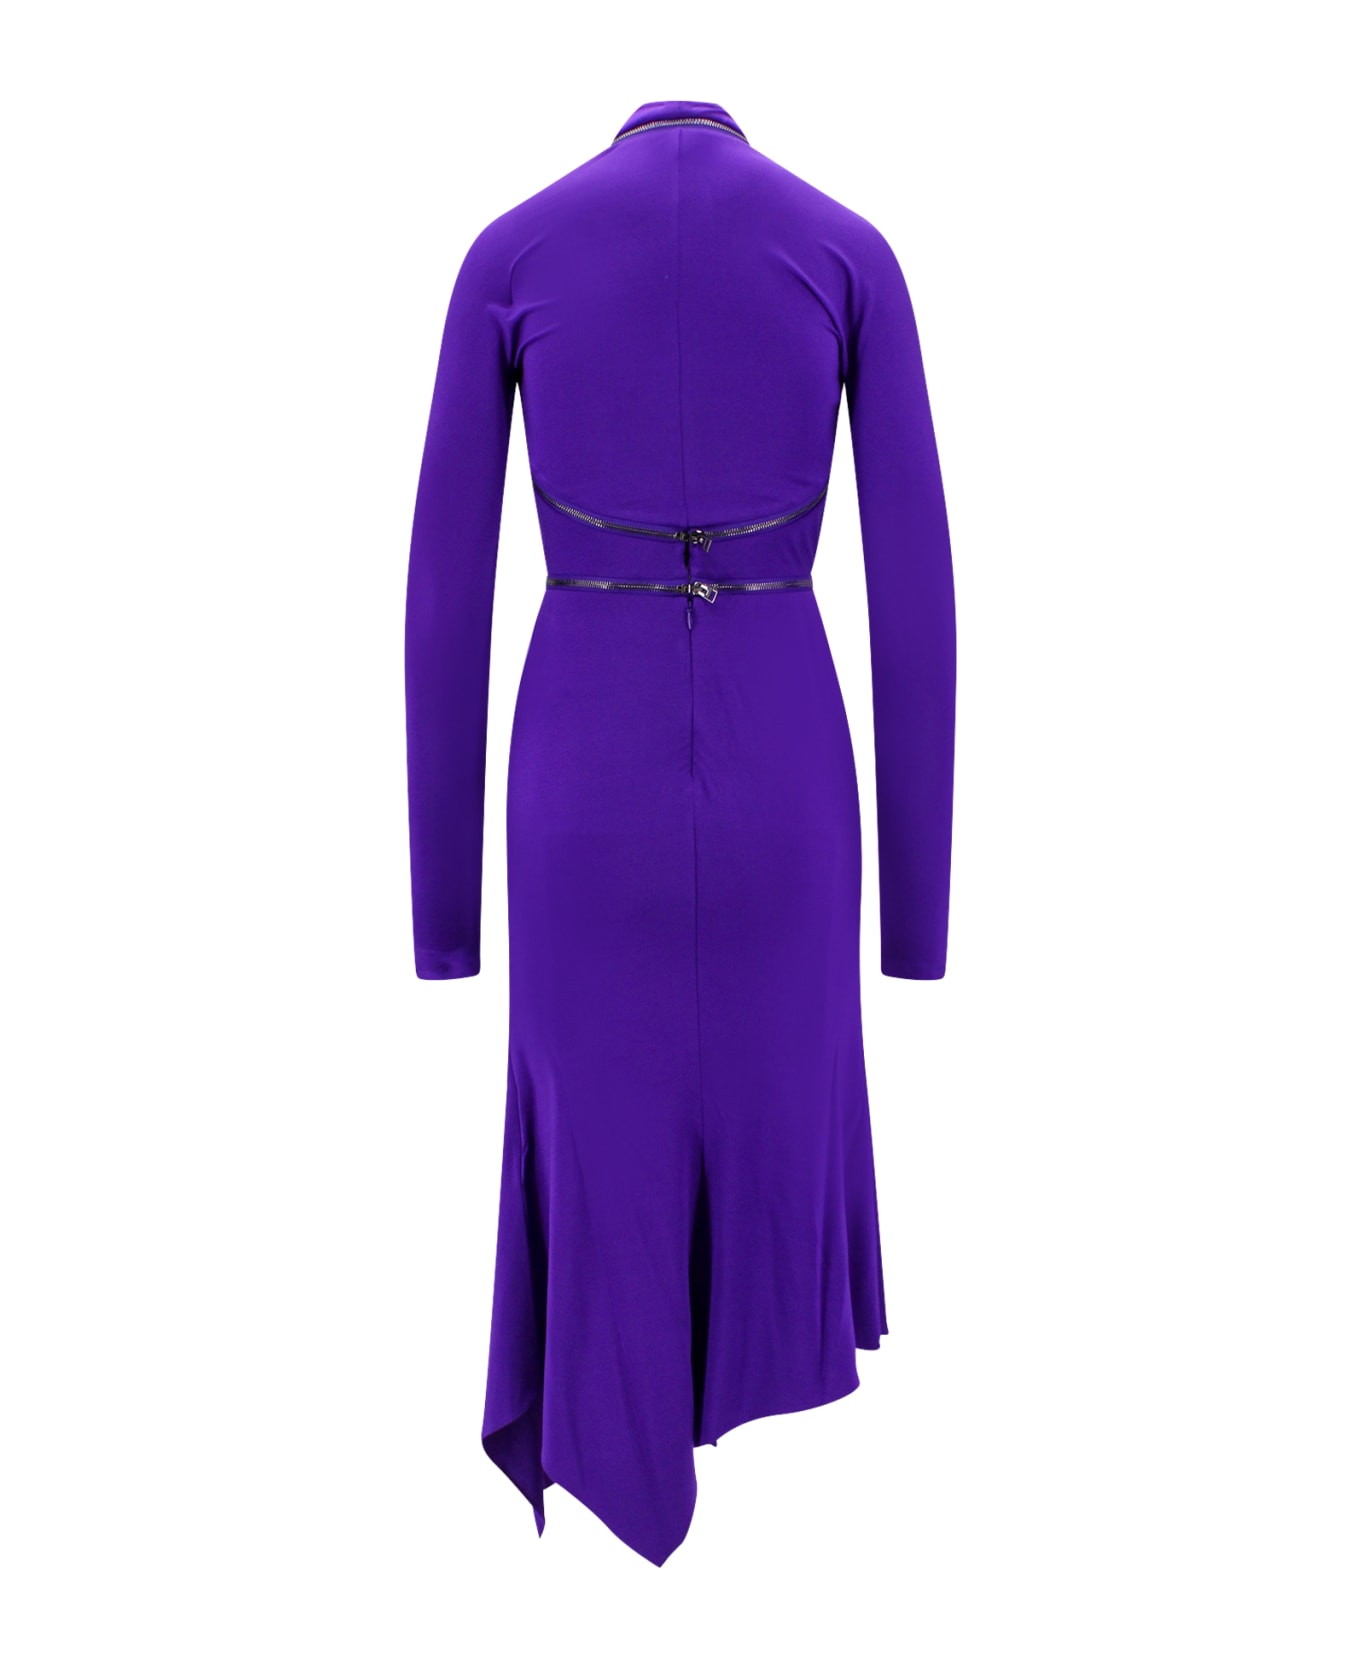 Tom Ford Dress - Purple